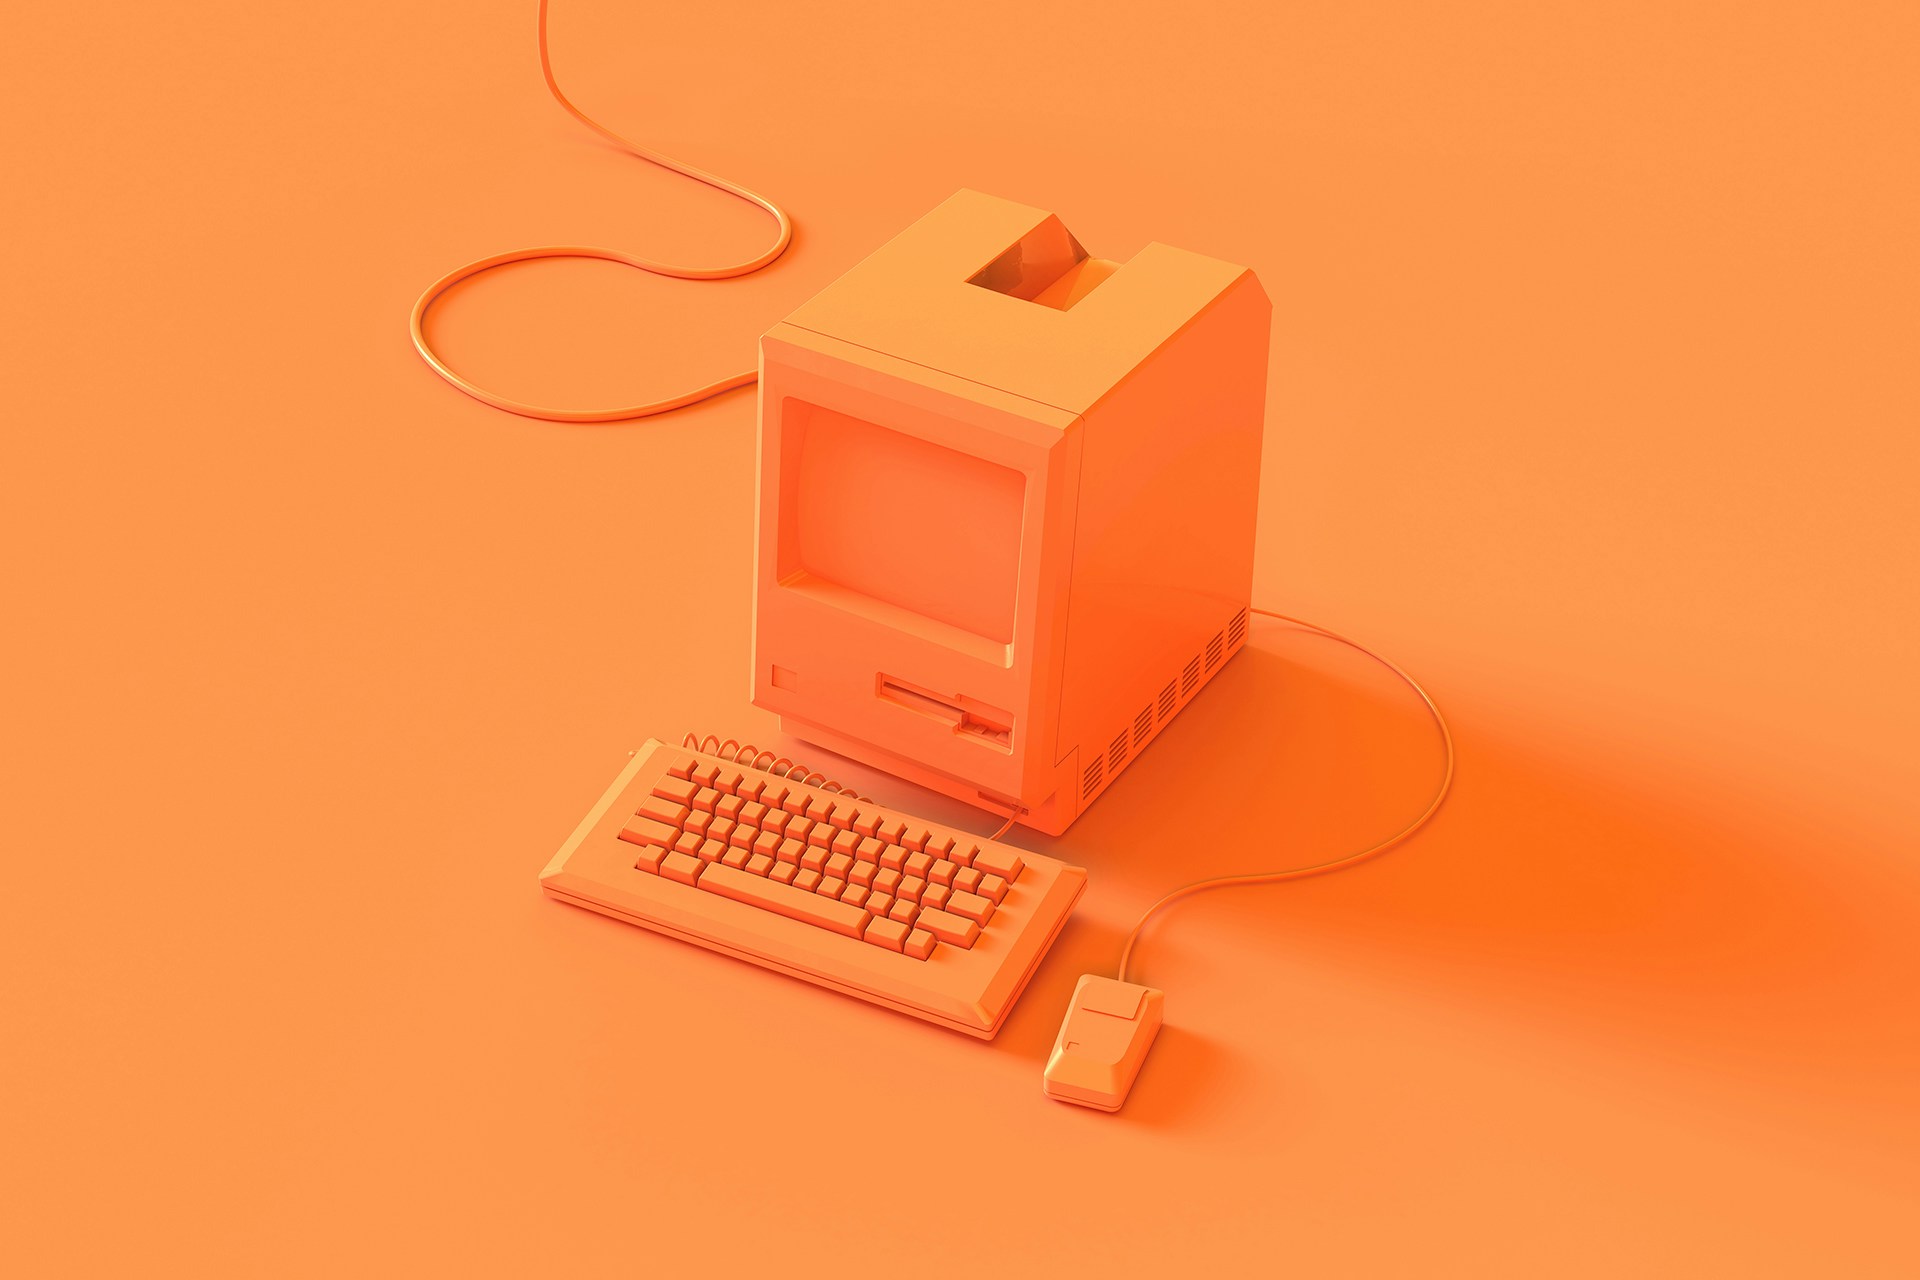 Ein orange gestrichener Retro-Computer vor einem orangenen Hintergrund als Titelbild für unseren Blog zu Big Data für Unternehmen